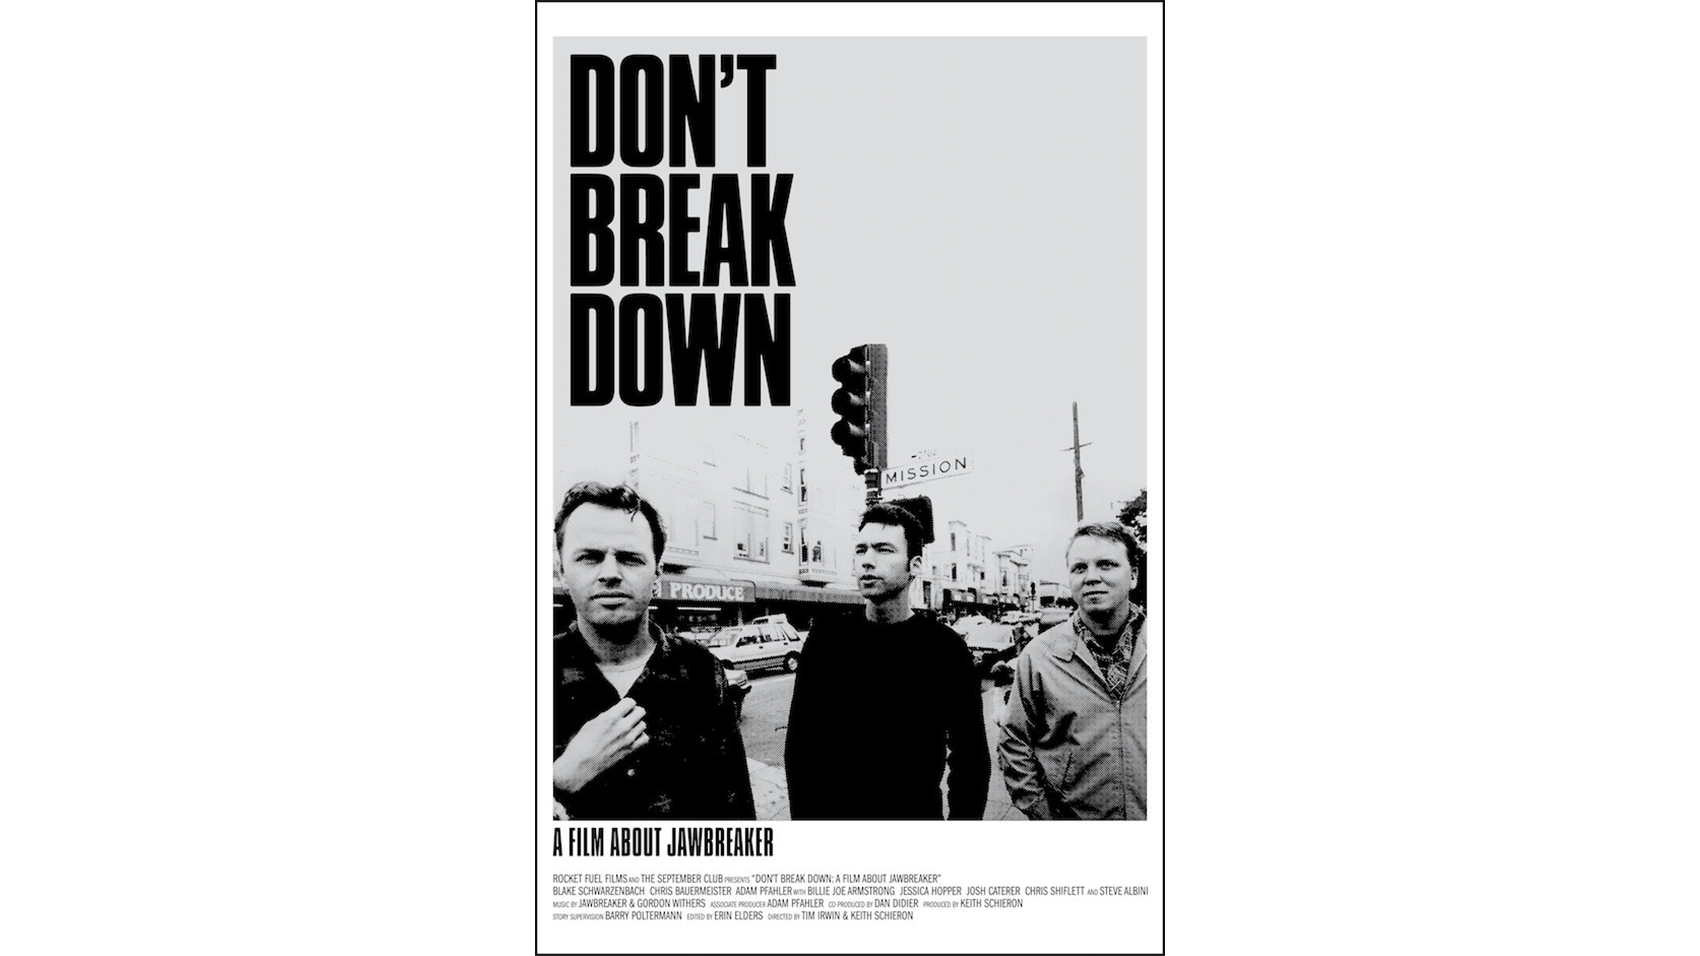 Dont break. Breakdown Breakdown Break Break down Song. Heeeey Break and down.